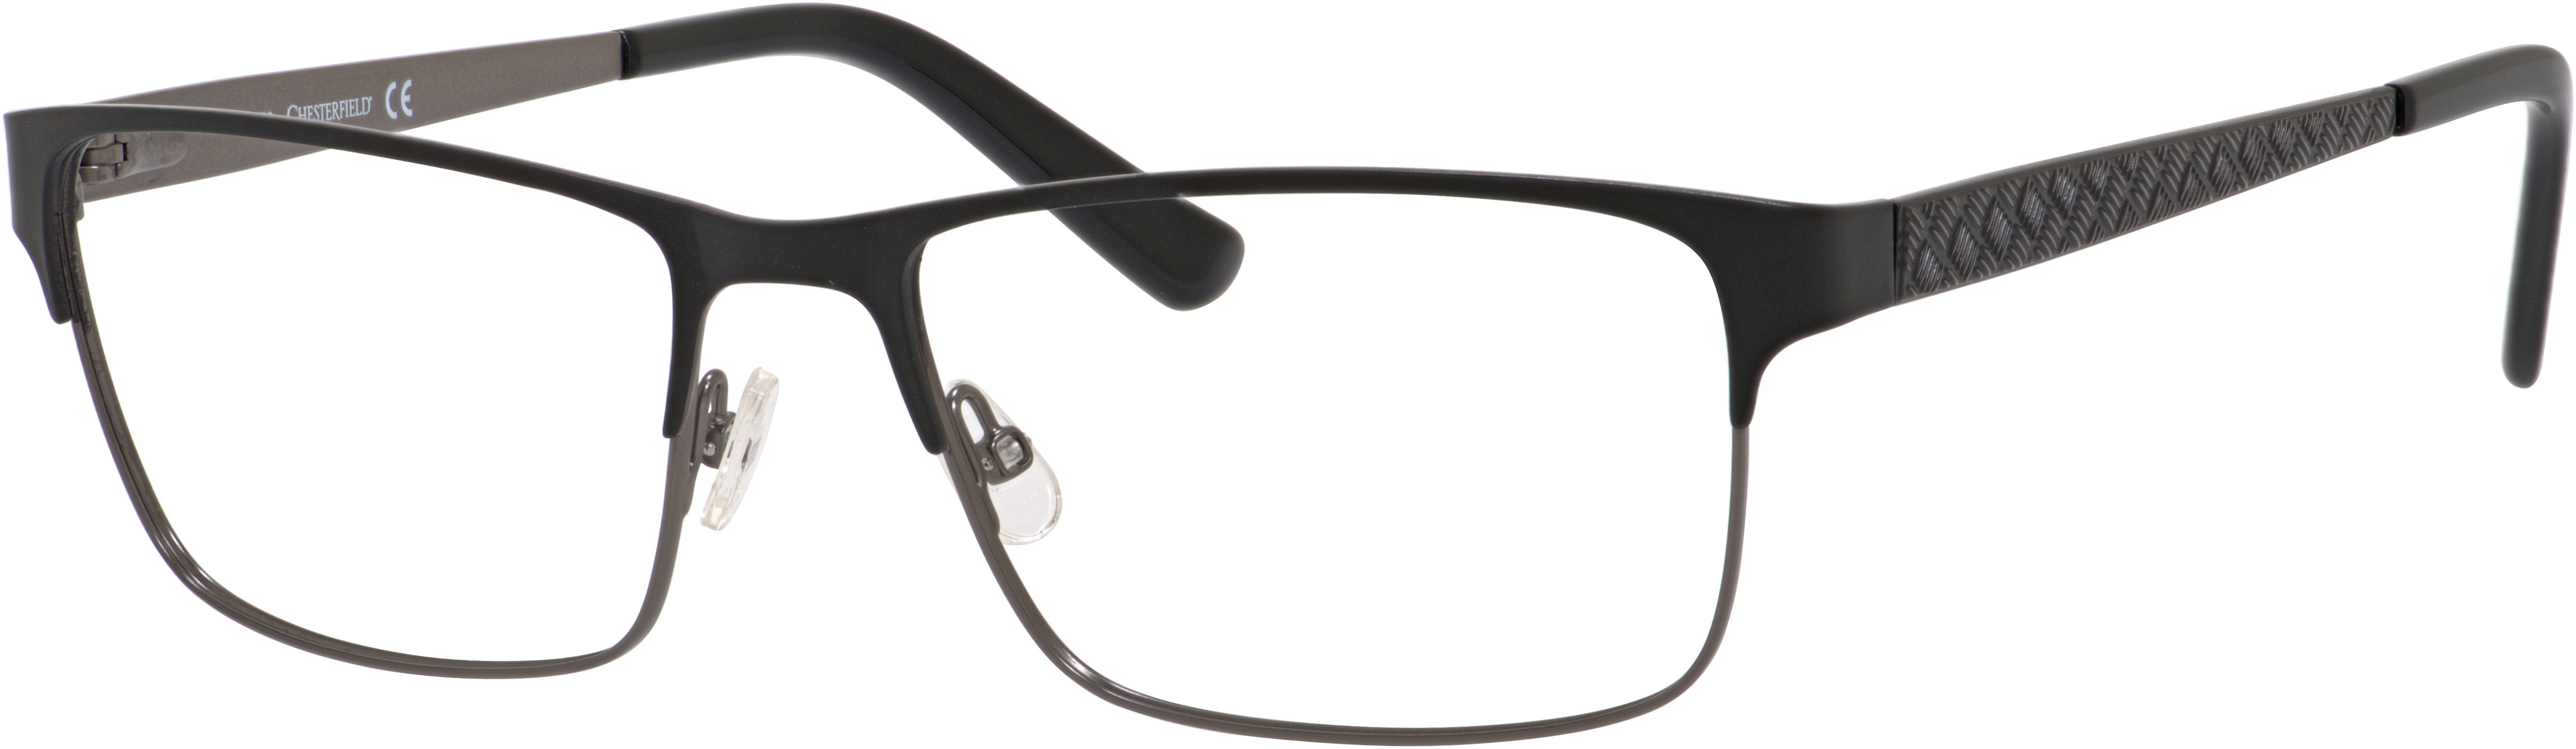  Chesterfield 34 XL Rectangular Eyeglasses 0RD2-0RD2  Black / Gunmetal (00 Demo Lens)